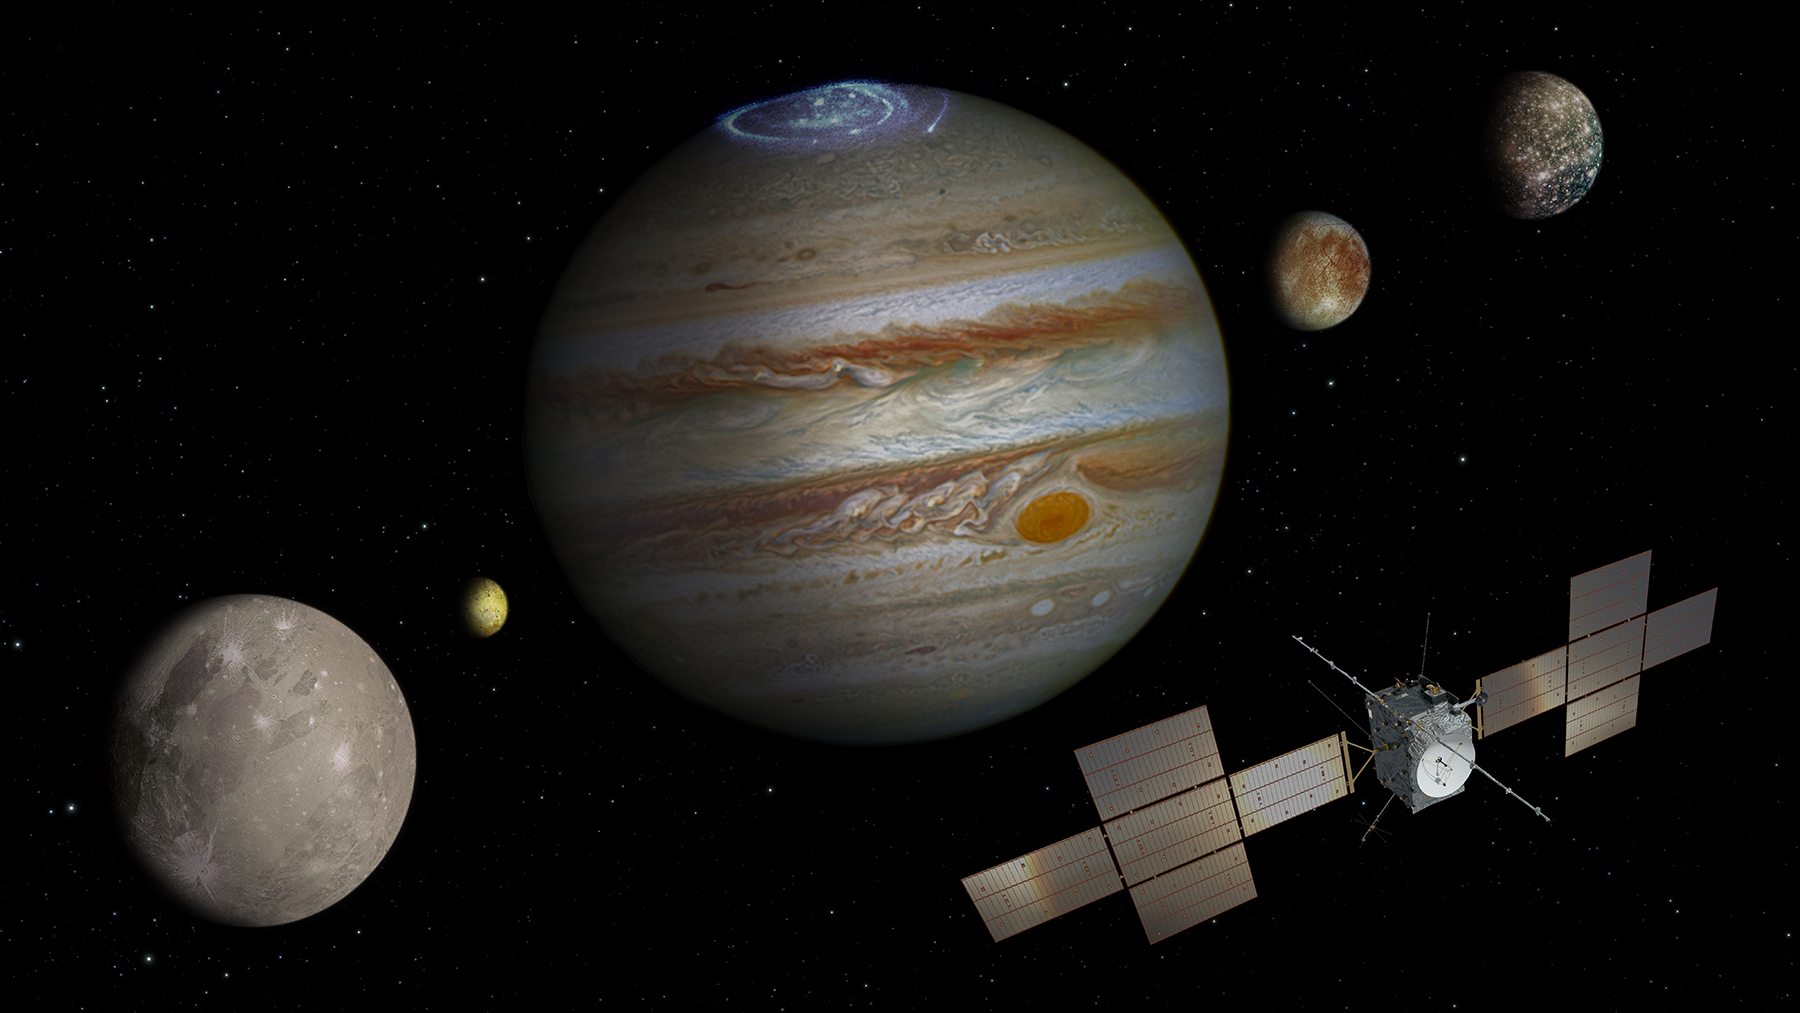 Künstlerische Darstellung der Juice-Mission zur Erforschung des Jupitersystems. © Spacecraft: ESA/ATG medialab; Jupiter: NASA/ESA/J. Nichols (University of Leicester); Ganymede: NASA/JPL; Io: NASA/JPL/University of Arizona; Callisto and Europa: NASA/JPL/DLR